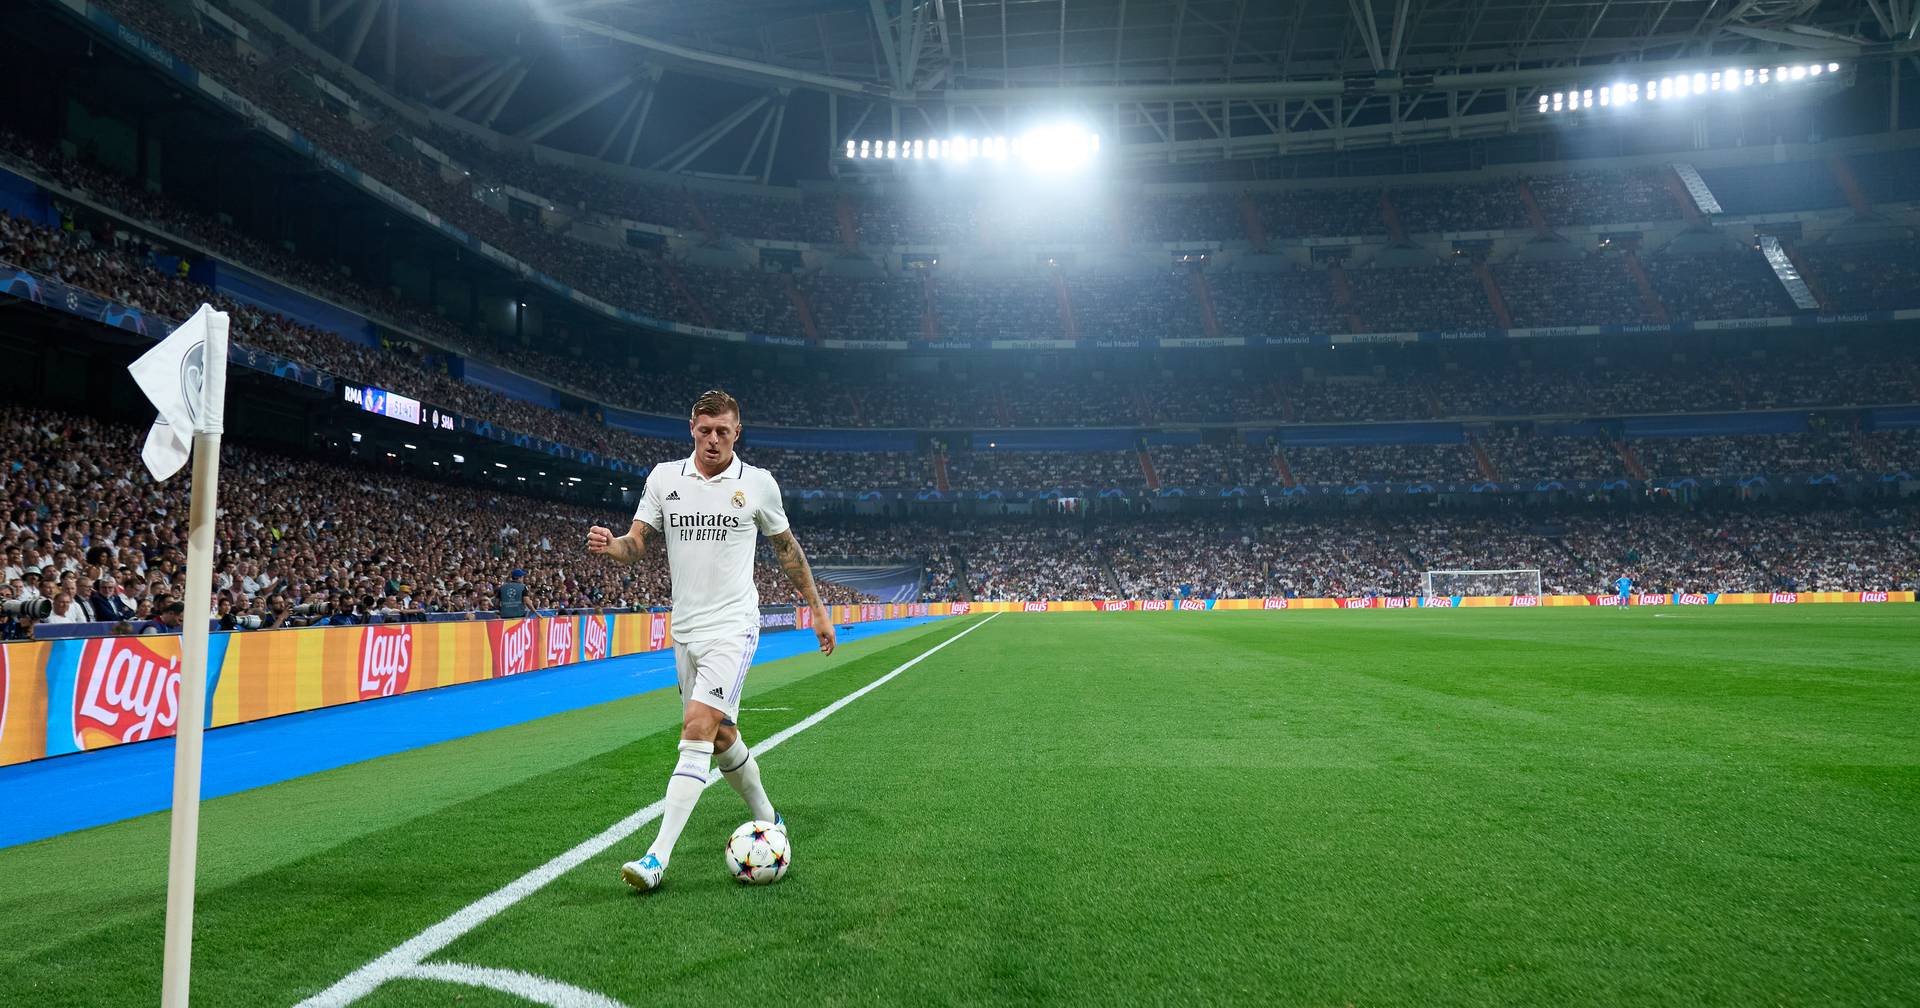 Jornal revela maiores salários das ligas europeias; Bale lidera na